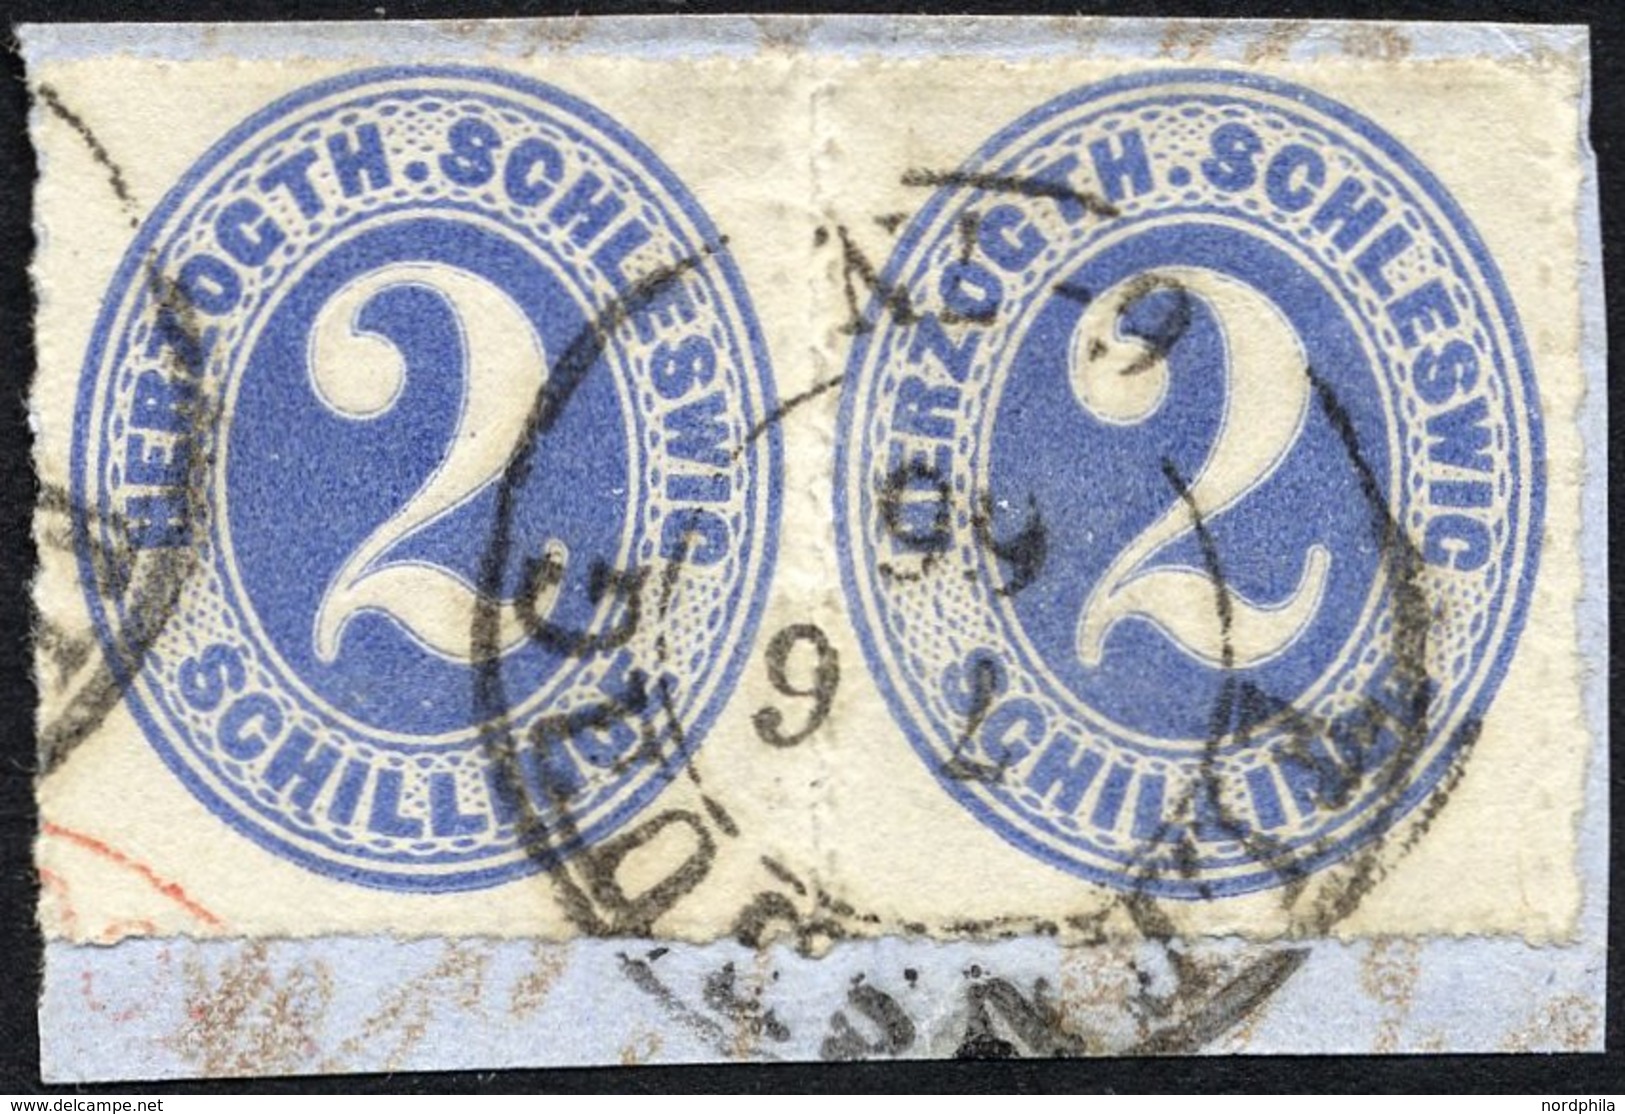 SCHLESWIG-HOLSTEIN 16 Paar BrfStk, 1865, 2 S. Grauultramarin Im Waagerechten Paar, K2 FLENSBURG, Prachtbriefstück - Schleswig-Holstein